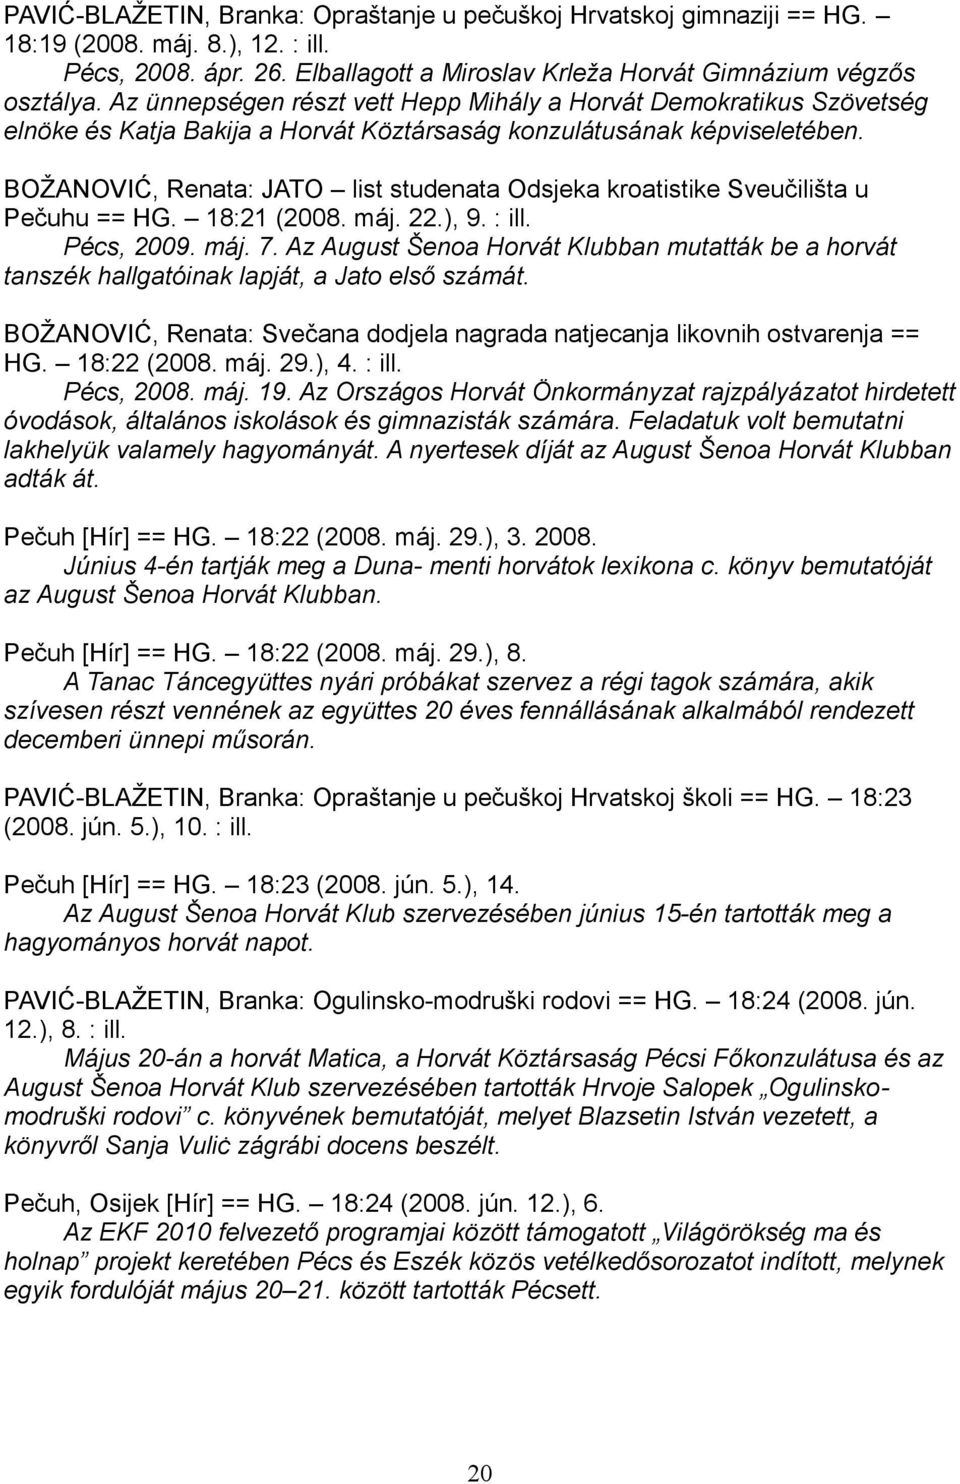 BOŽANOVIĆ, Renata: JATO list studenata Odsjeka kroatistike Sveučilišta u Pečuhu == HG. 18:21 (2008. máj. 22.), 9. : ill. Pécs, 2009. máj. 7.